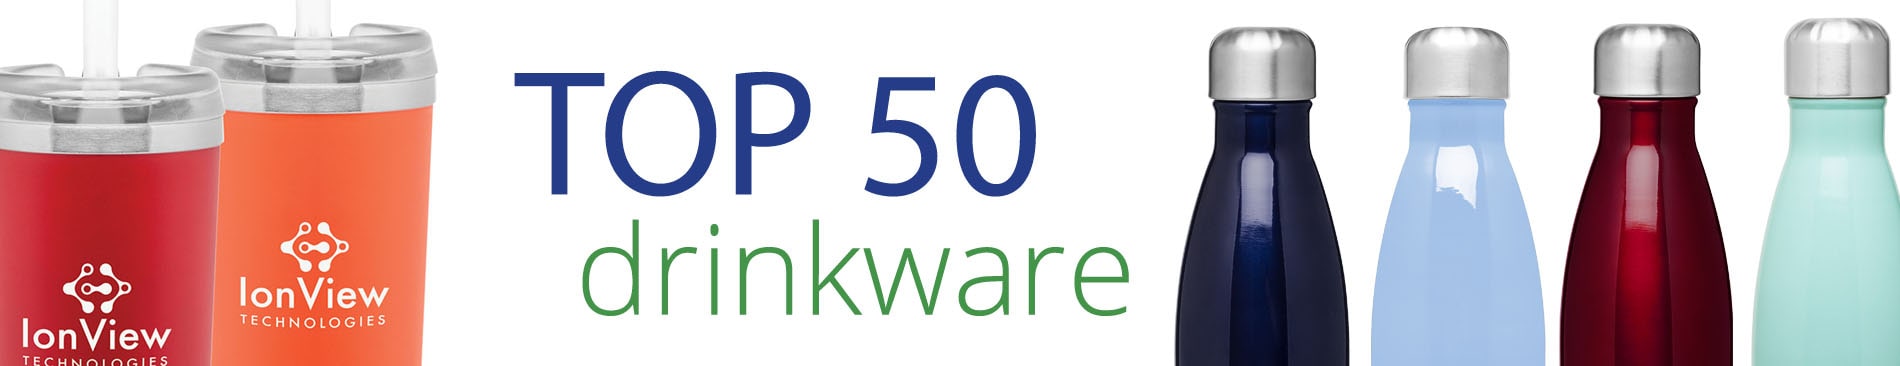 Top 50 Drinkware